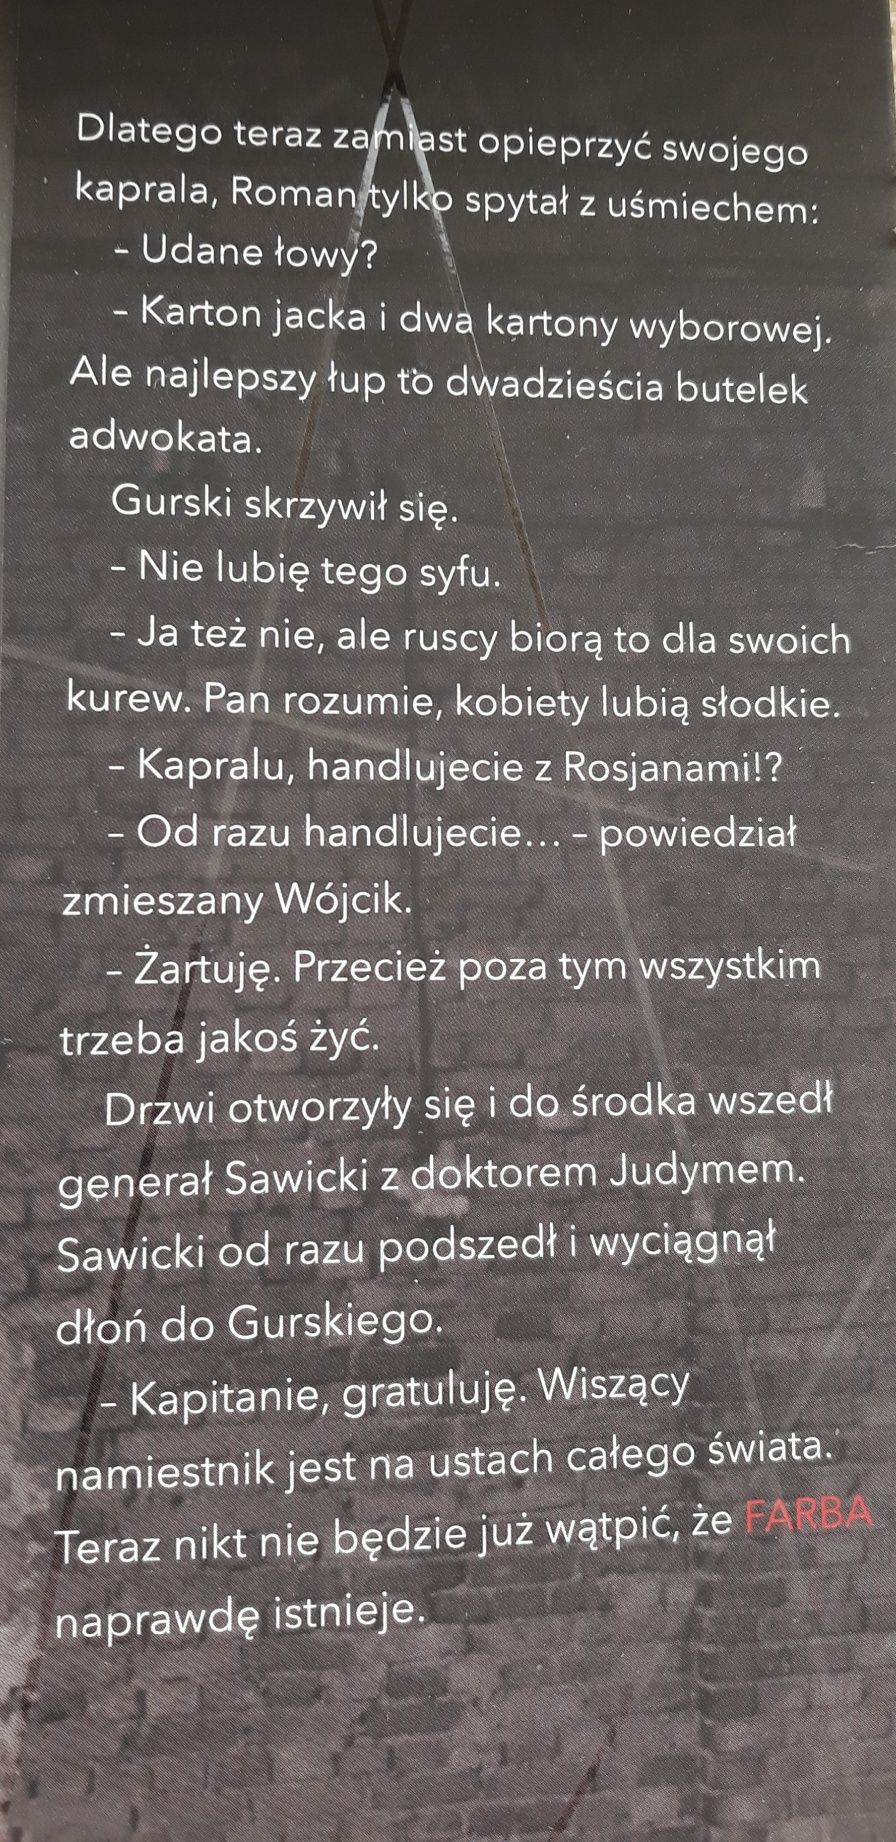 Farba - Wojtek Miłoszewski